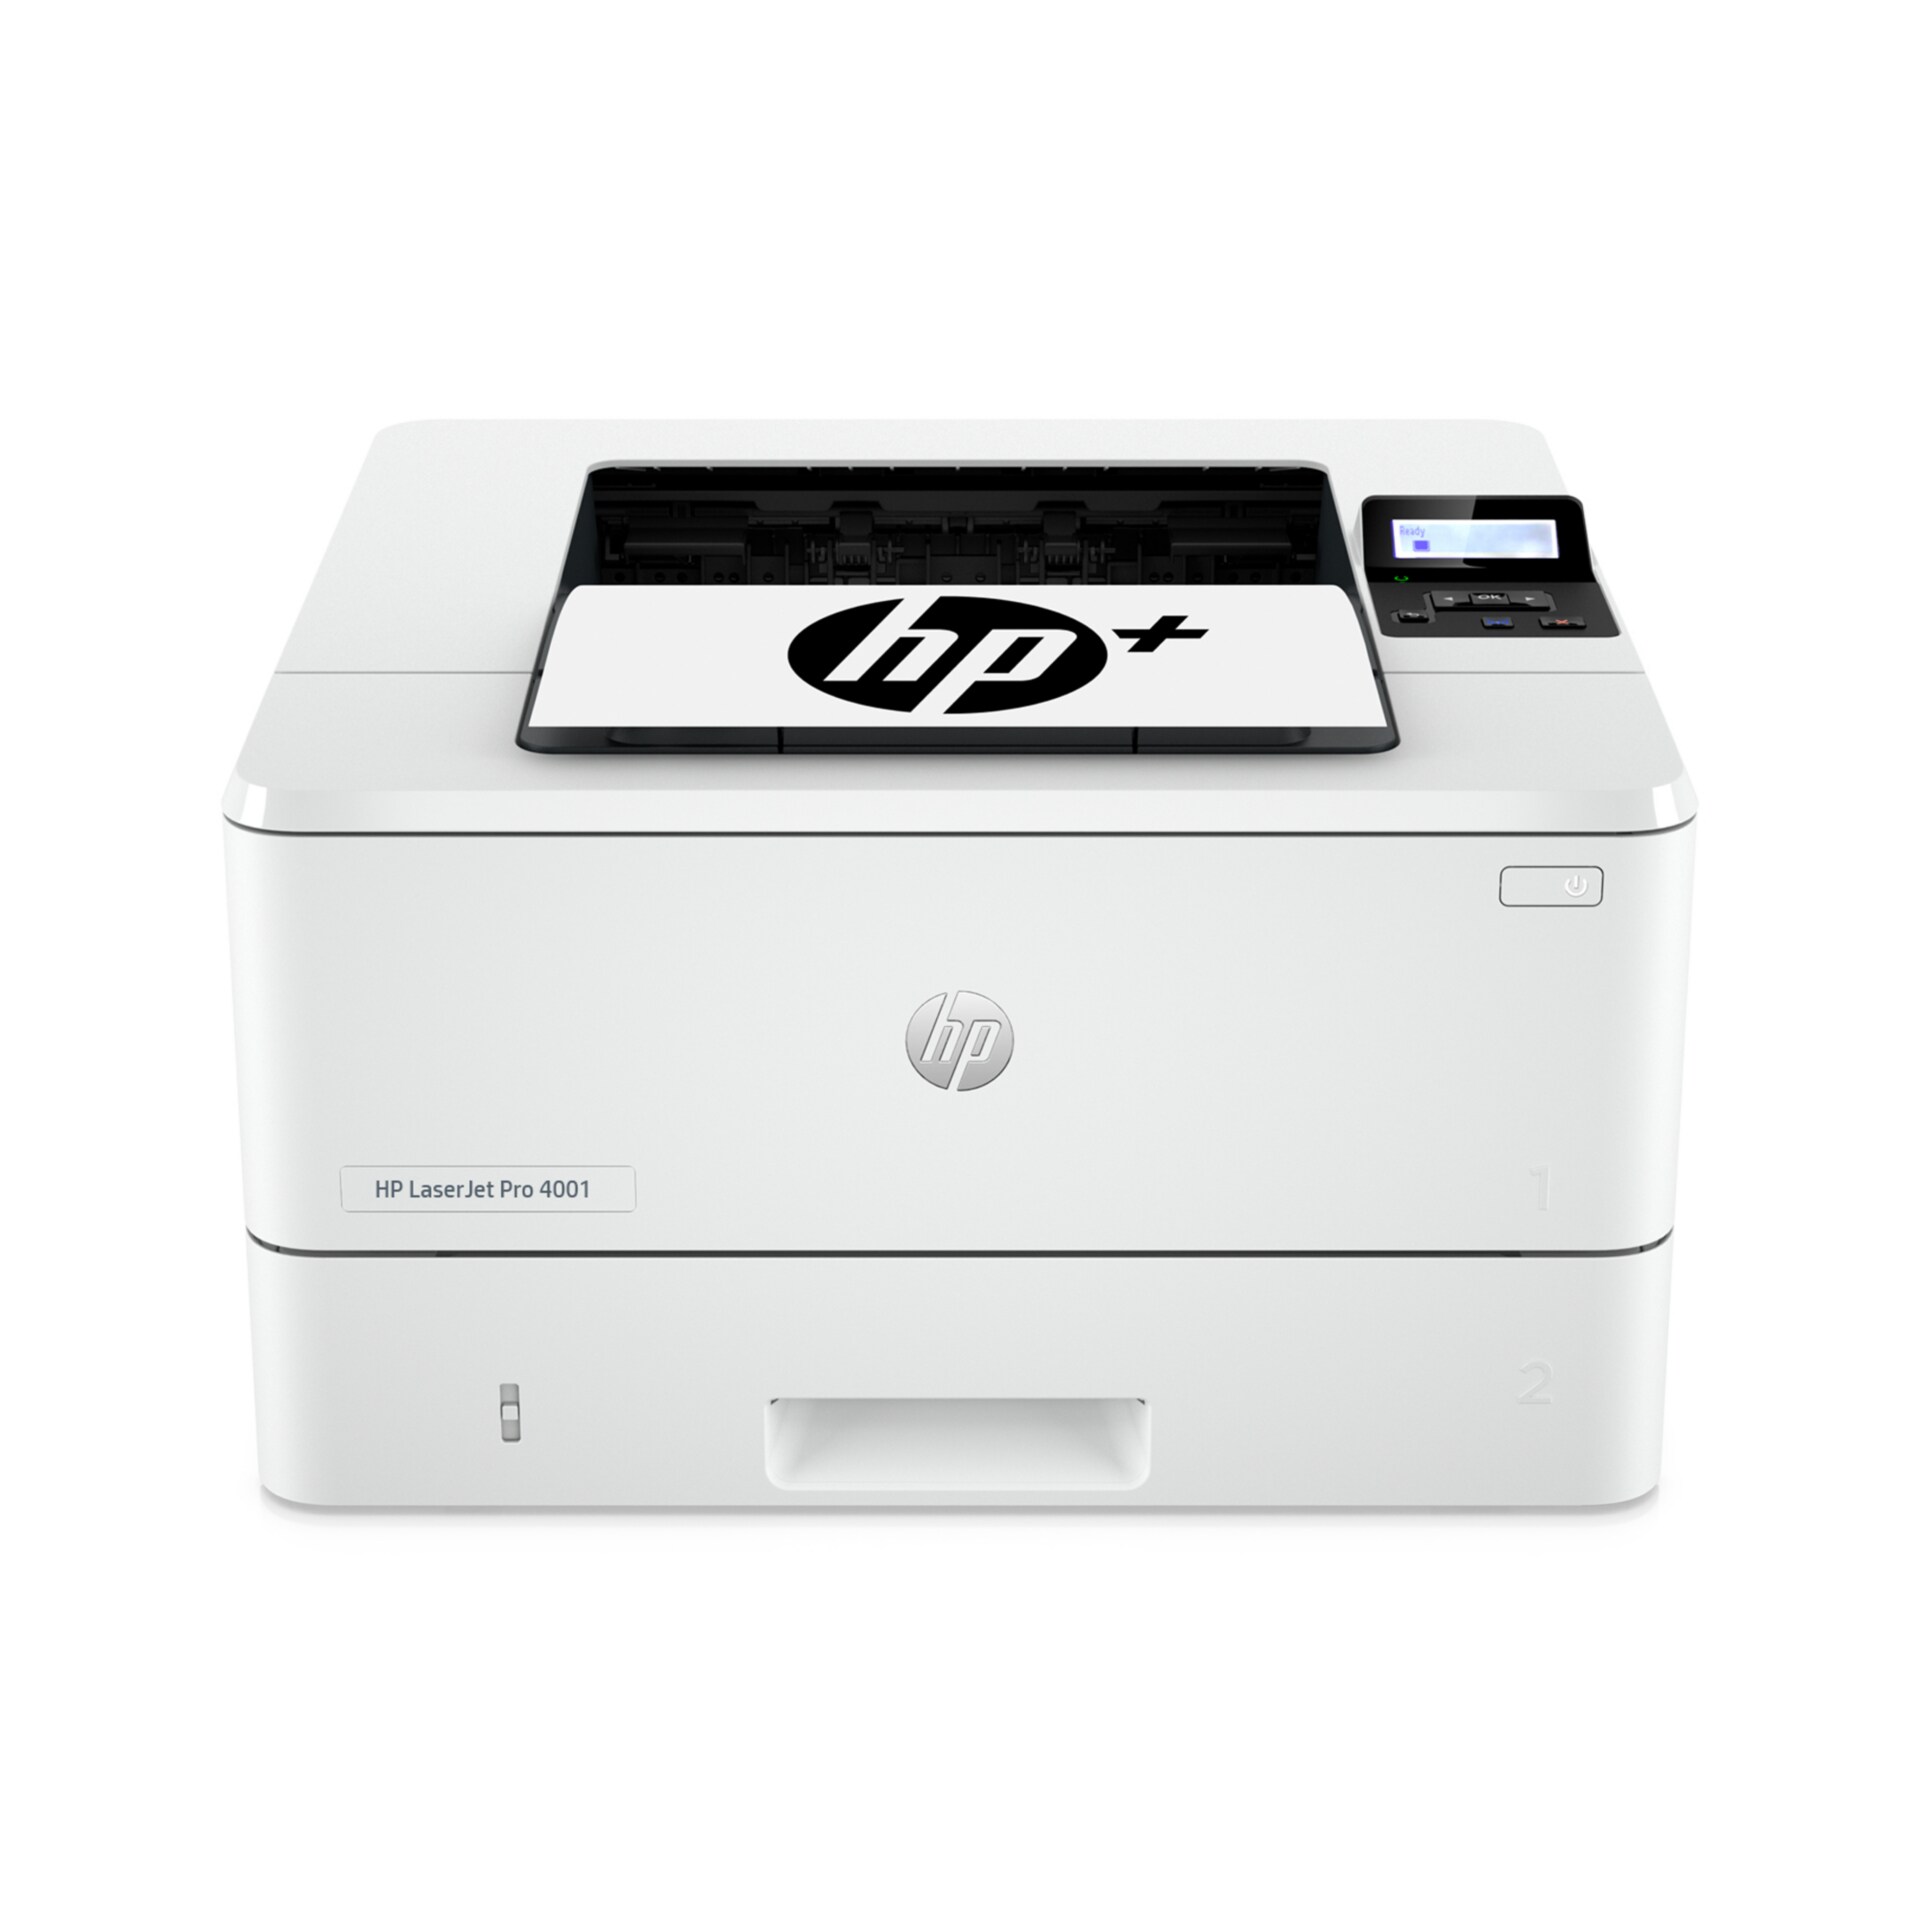 Pro 4001dwe Black & White Printer HP+ - 2Z601E#BGJ - -